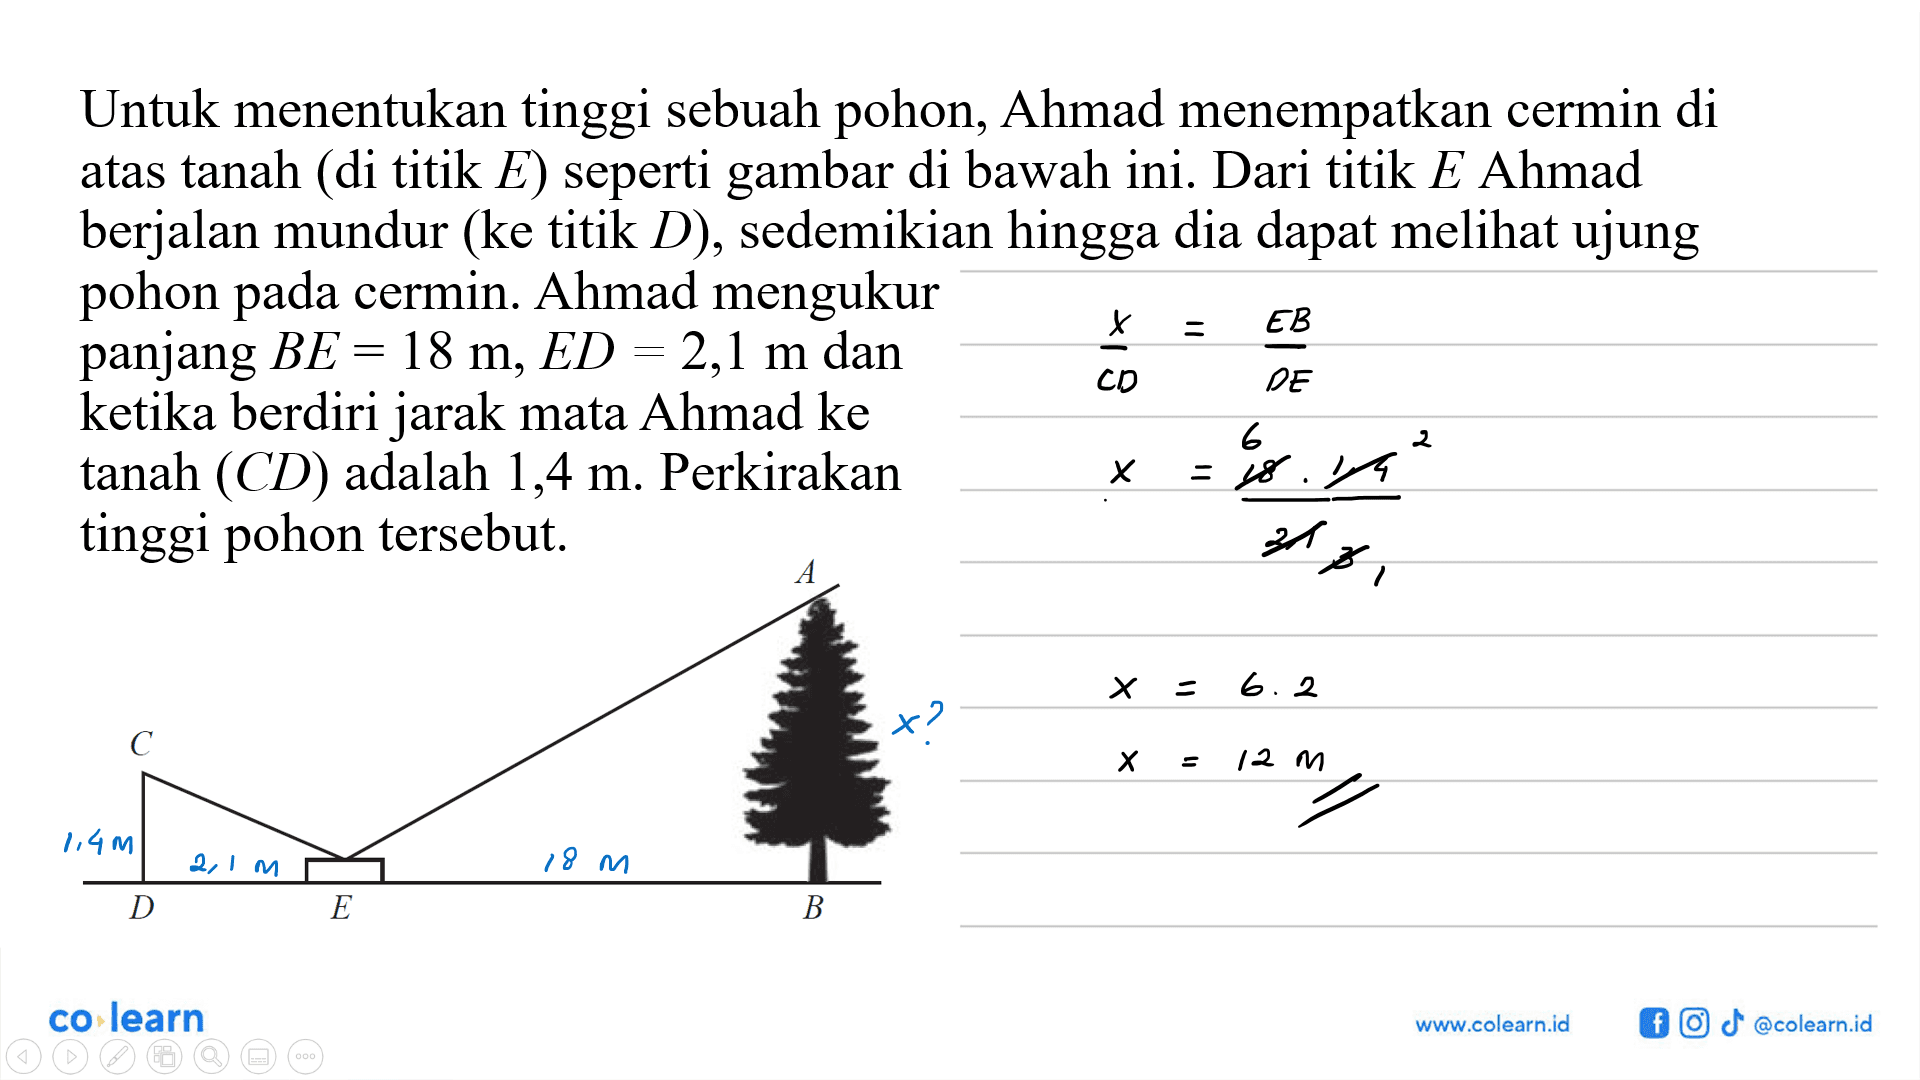 Untuk menentukan tinggi sebuah pohon, Ahmad menempatkan cermin di atas tanah (di titik  E) seperti gambar di bawah ini. Dari titik  E  Ahmad berjalan mundur (ke titik  D), sedemikian hingga dia dapat meli ujung pohon pada cermin. Ahmad mengukur panjang  BE=18 m, ED=2,1 m dan ketika berdiri jarak mata Ahmad ke  x/CD=EB/DE tanah (CD)  adalah 1,4 m. Perkirakan tinggi pohon tersebut.